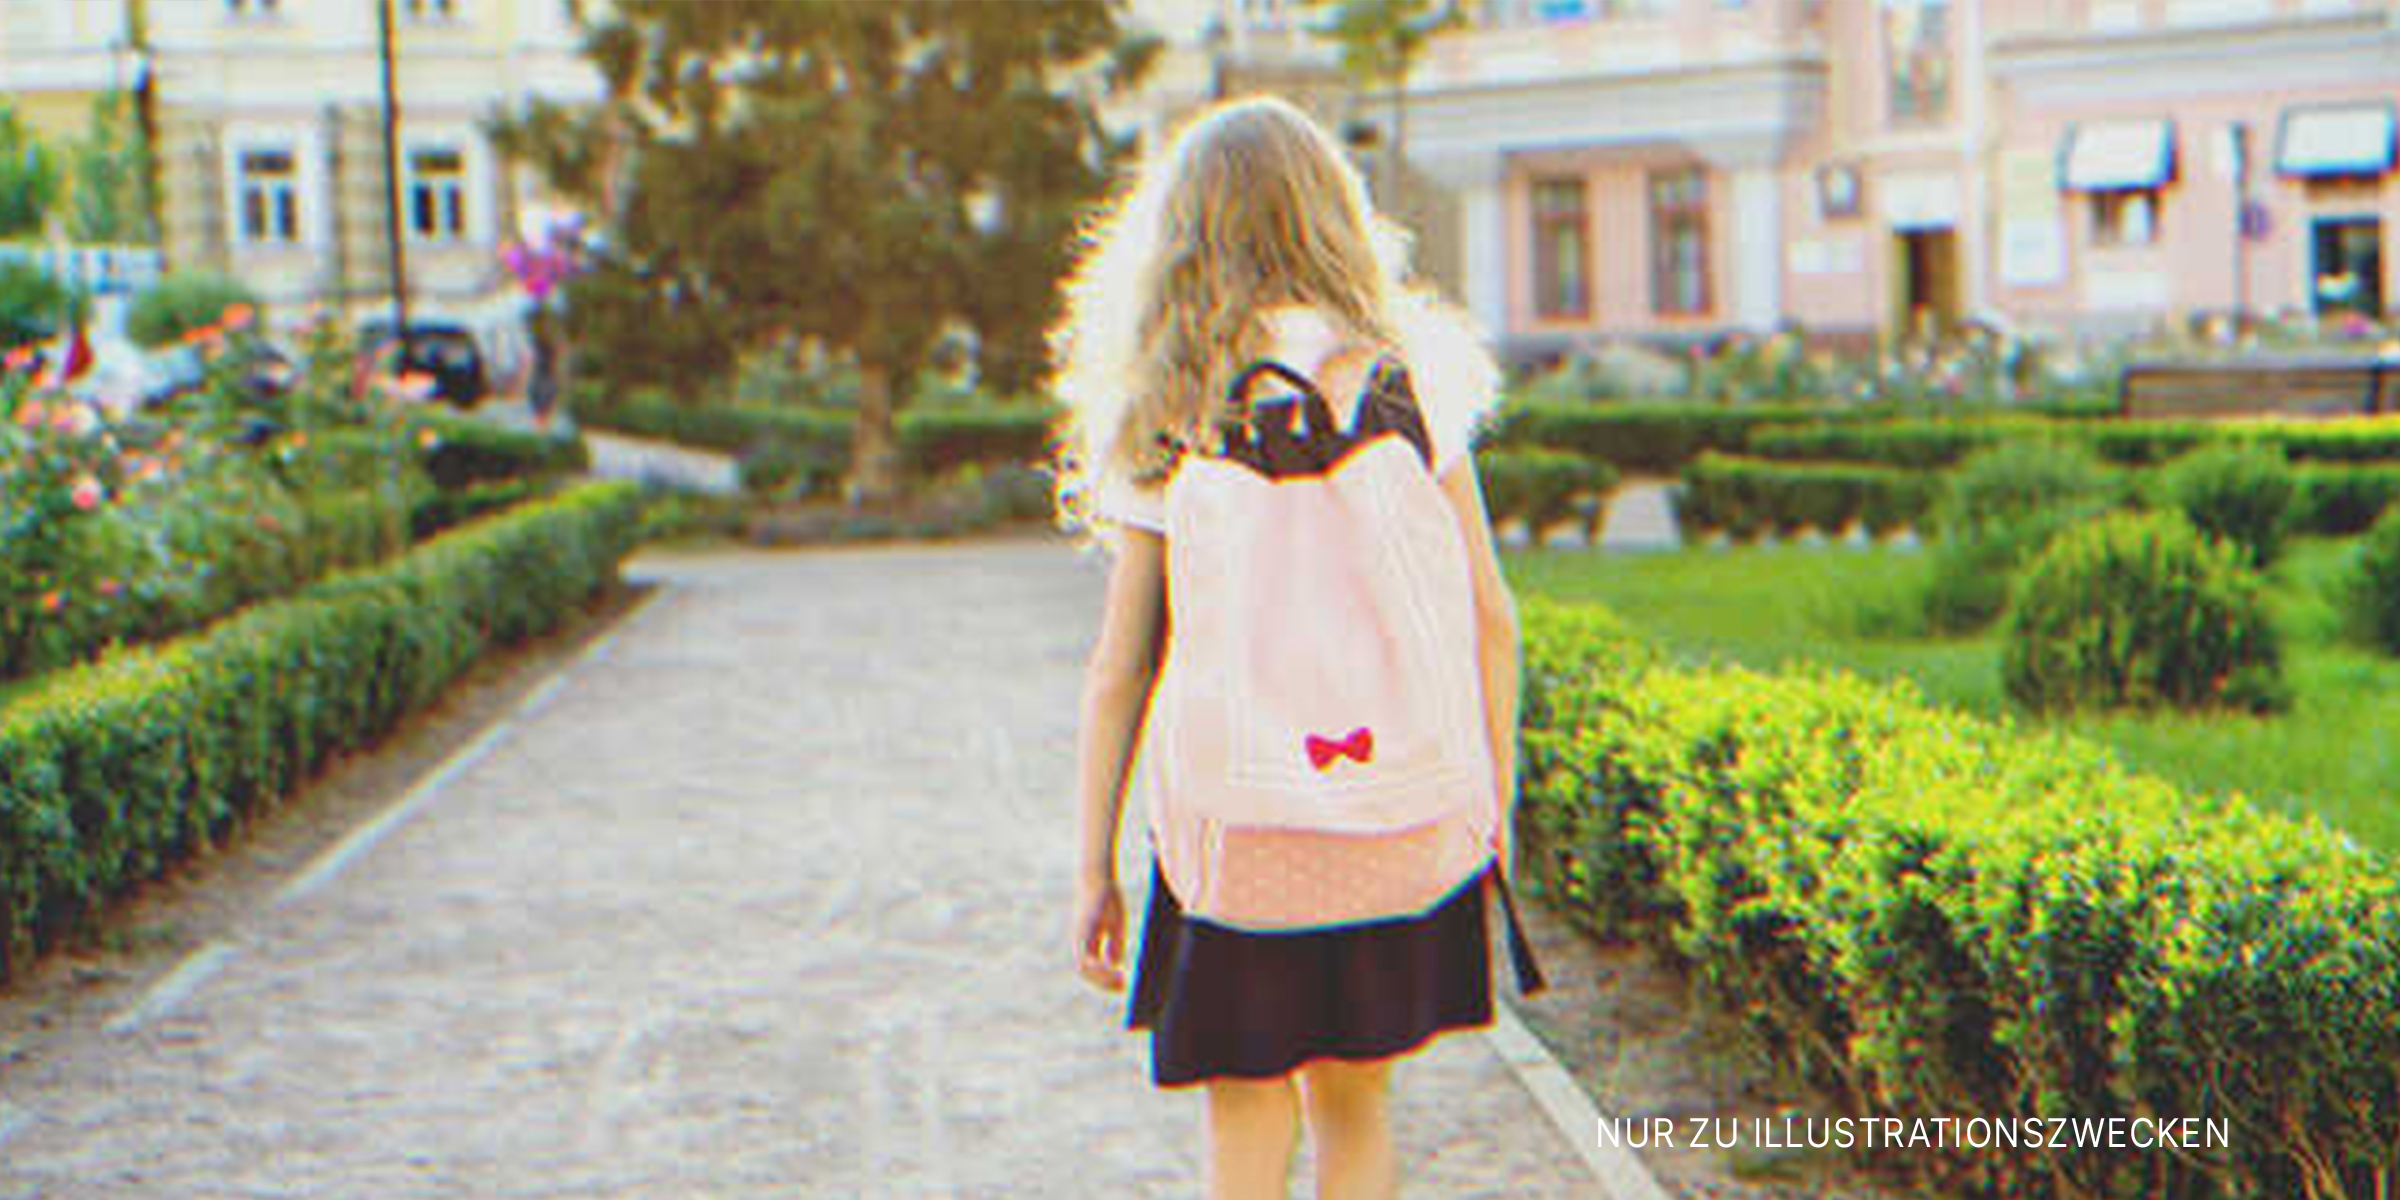 Ein Mädchen auf dem Weg zur Schule. | Quelle: Shutterstock